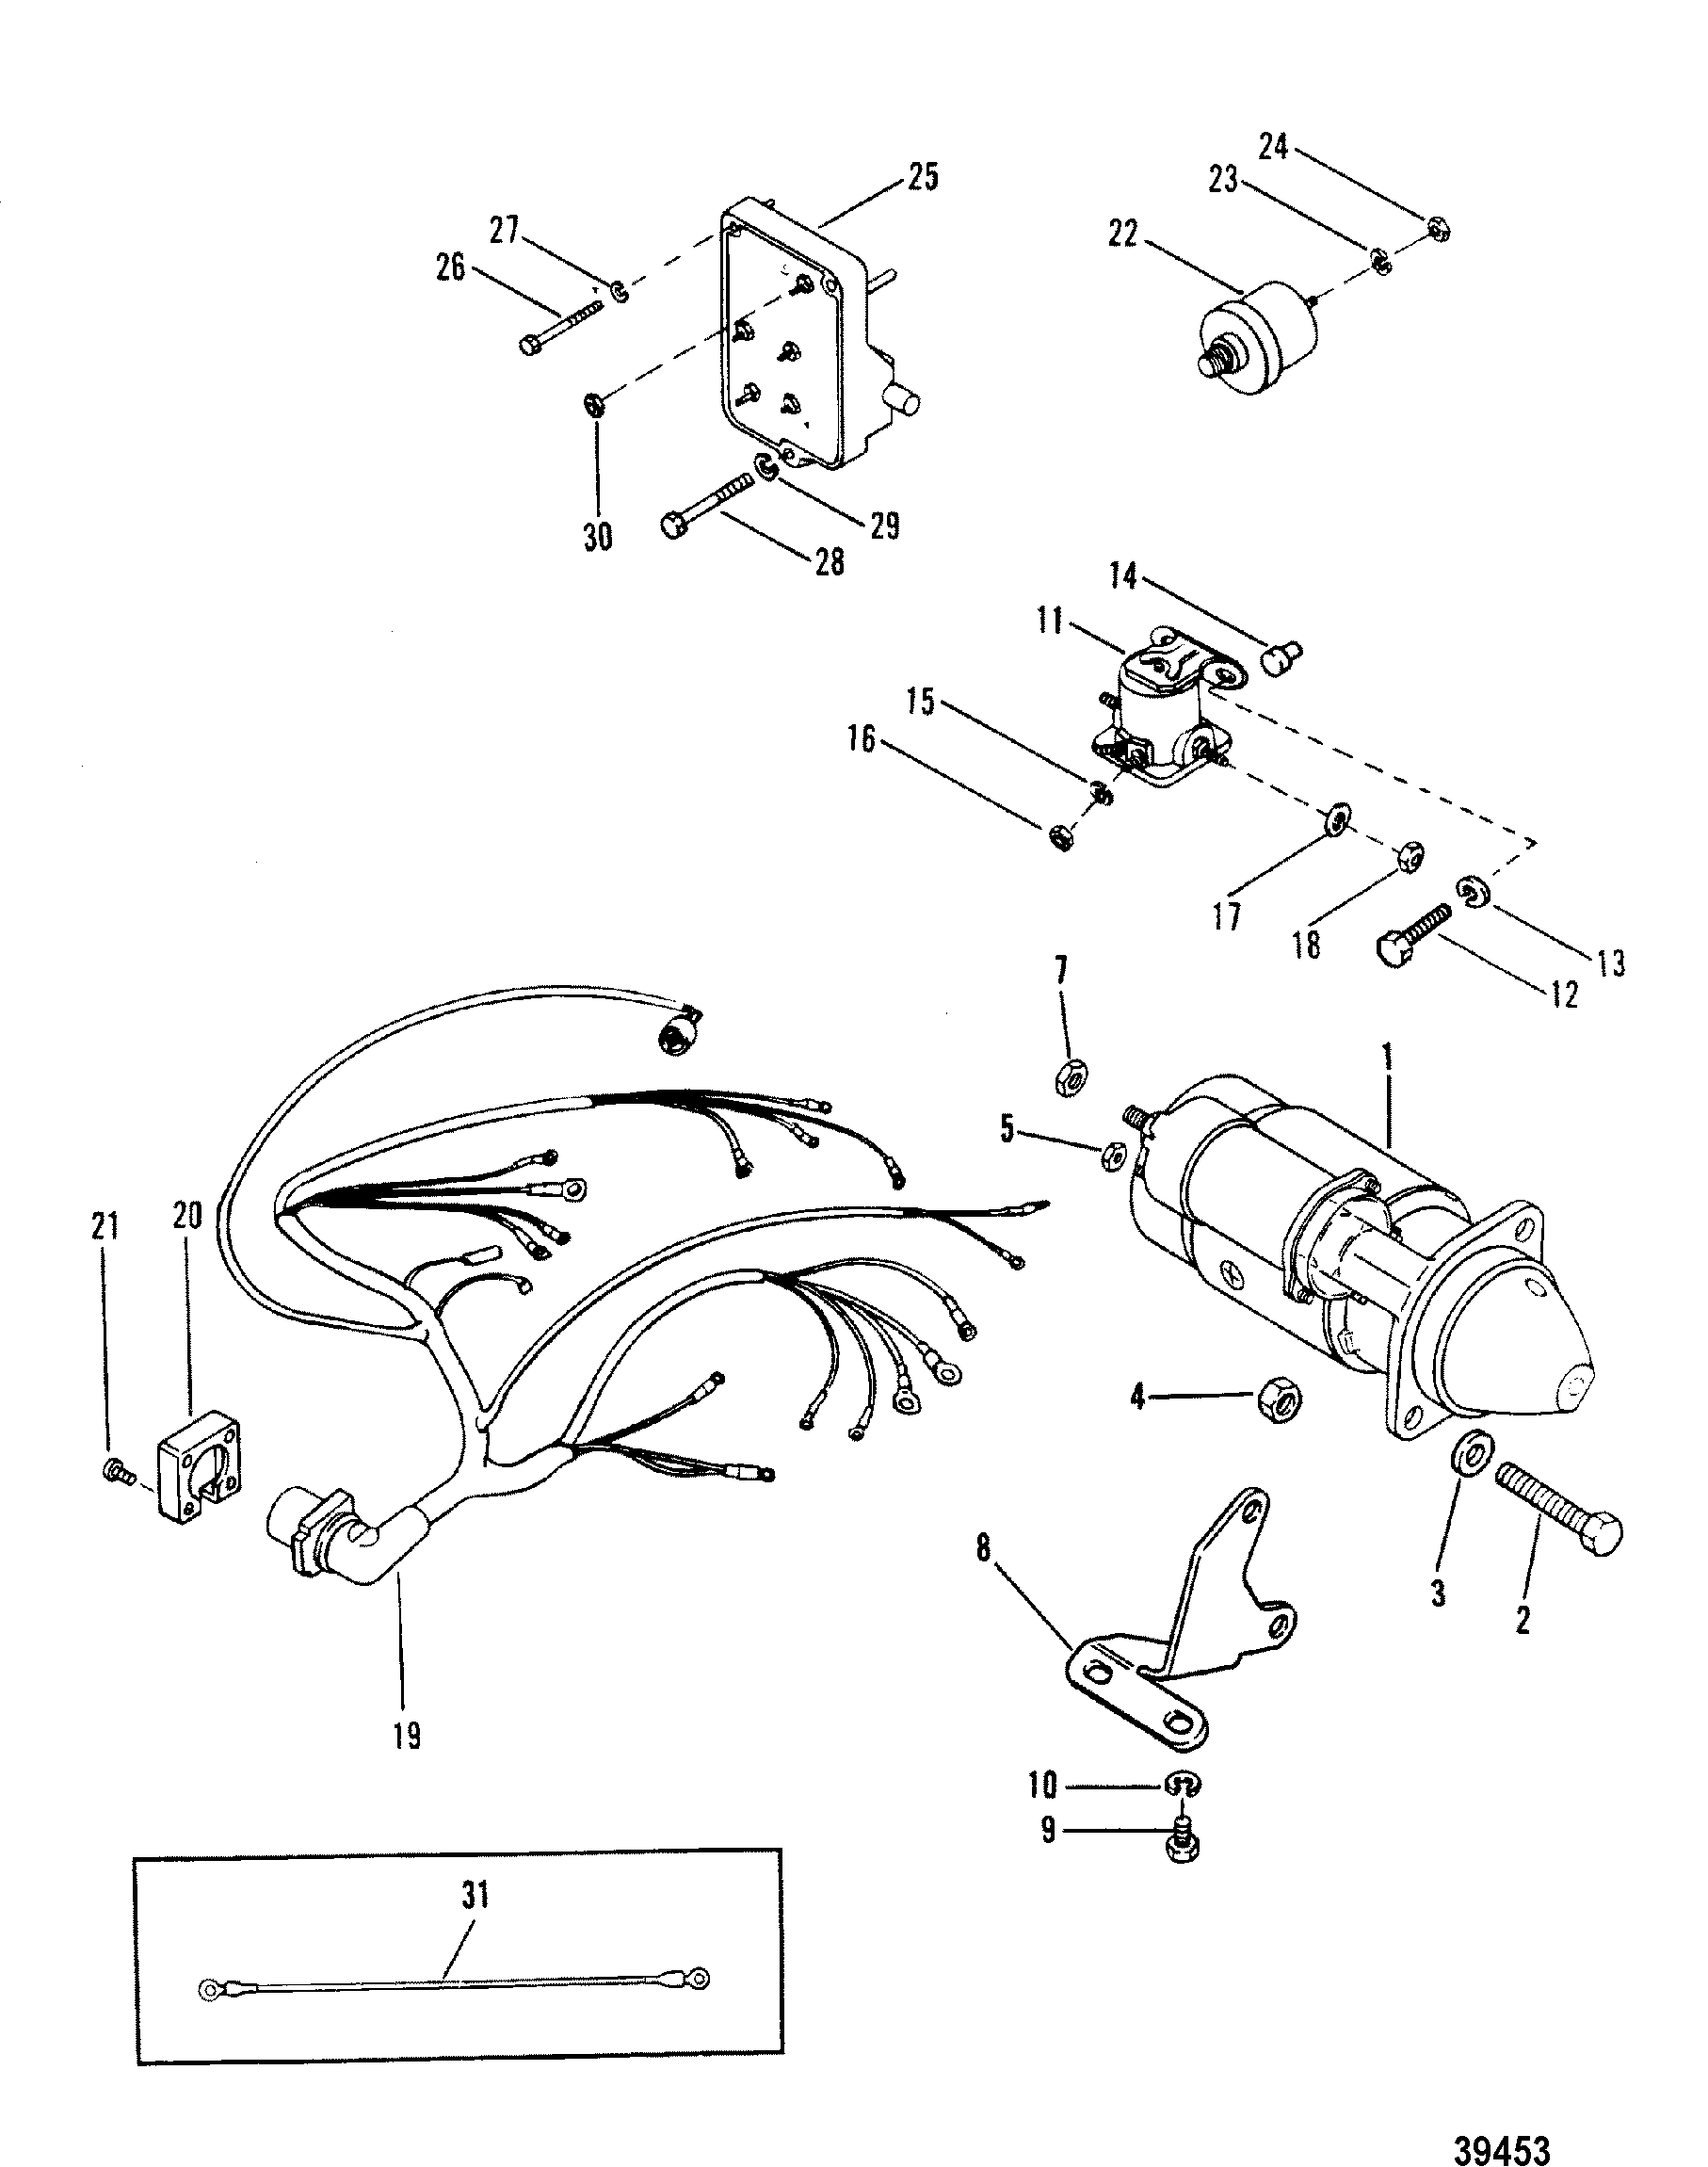 Starter Motor And Wiring Harness For Mercruiser 165 - Starter Motor Wiring Diagram